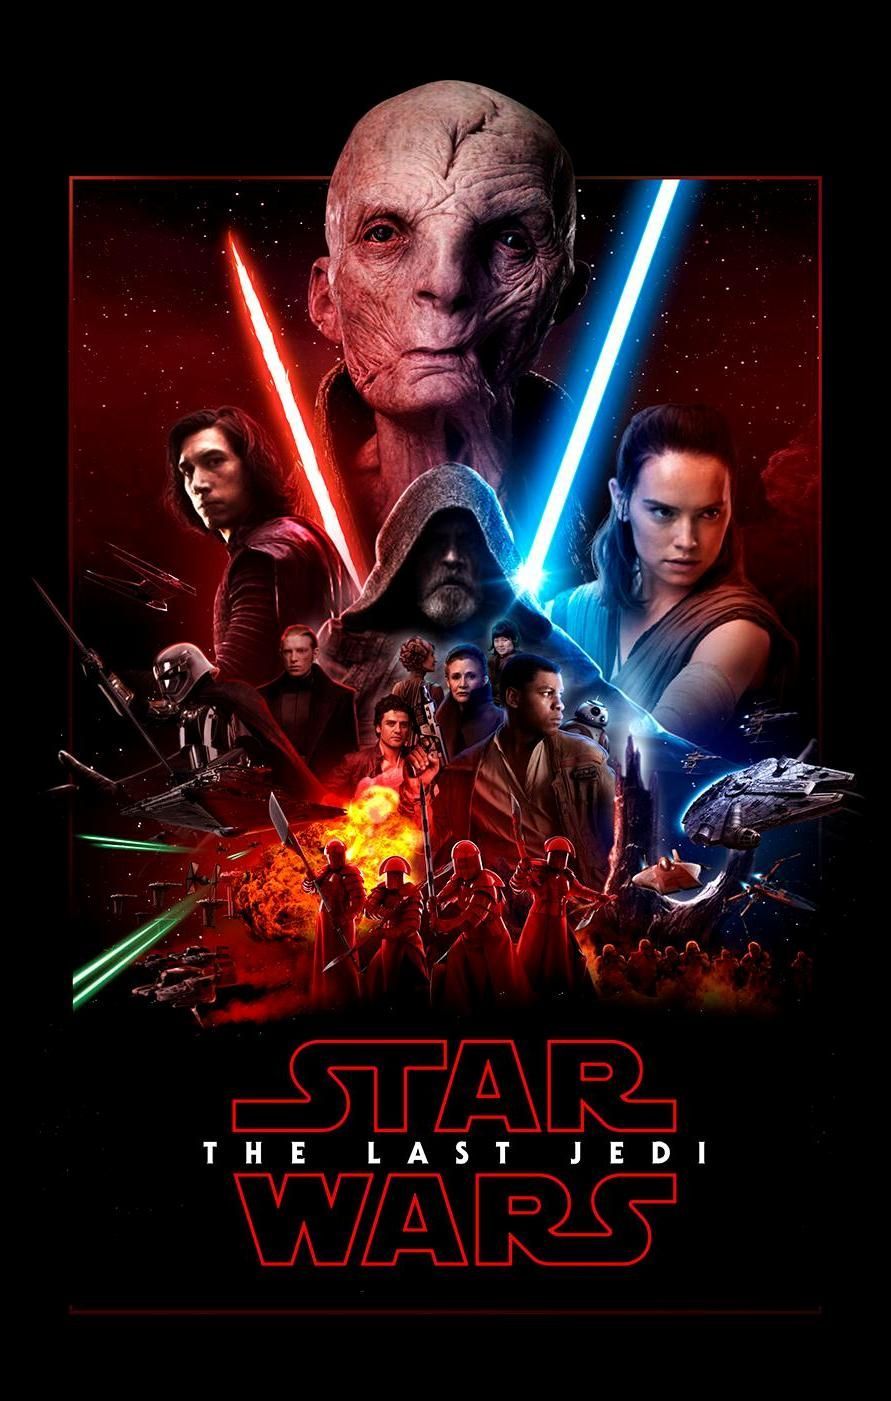 The Last Jedi Star Wars Wallpaper On